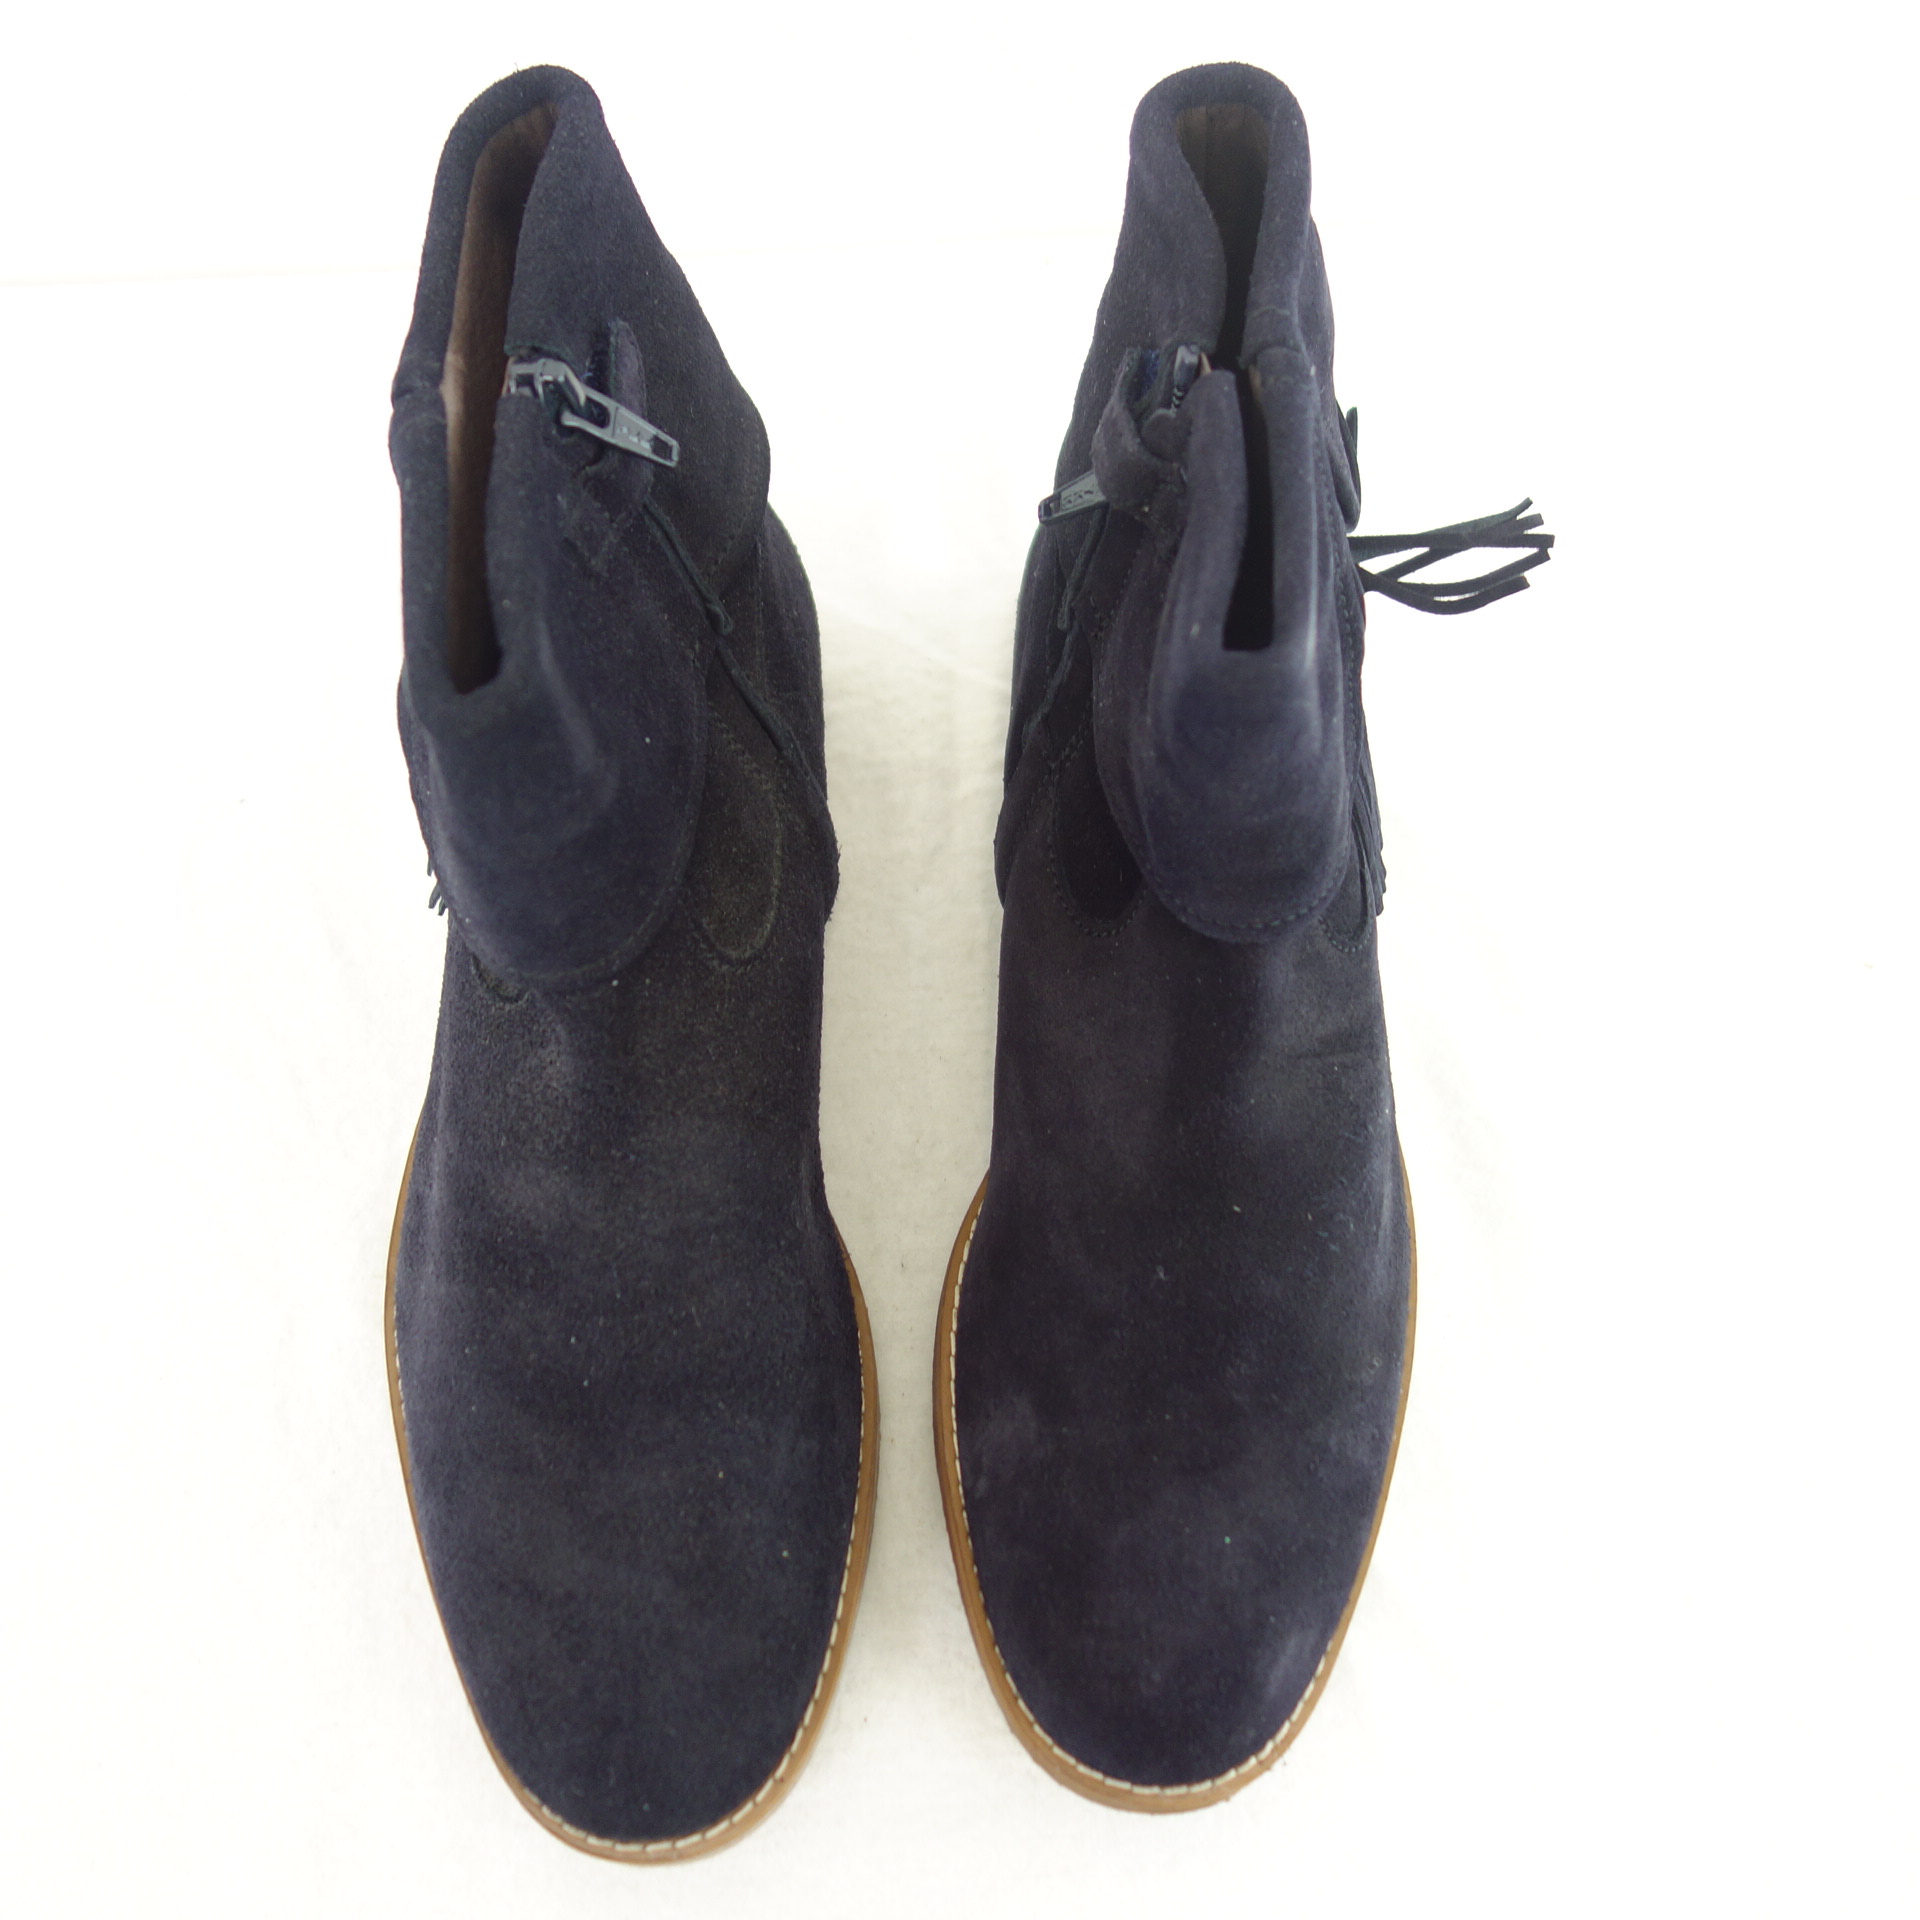 CLIC Damen Schuhe Stiefel Stiefeletten Boots Blau Wildleder 38,5 ( 39 )